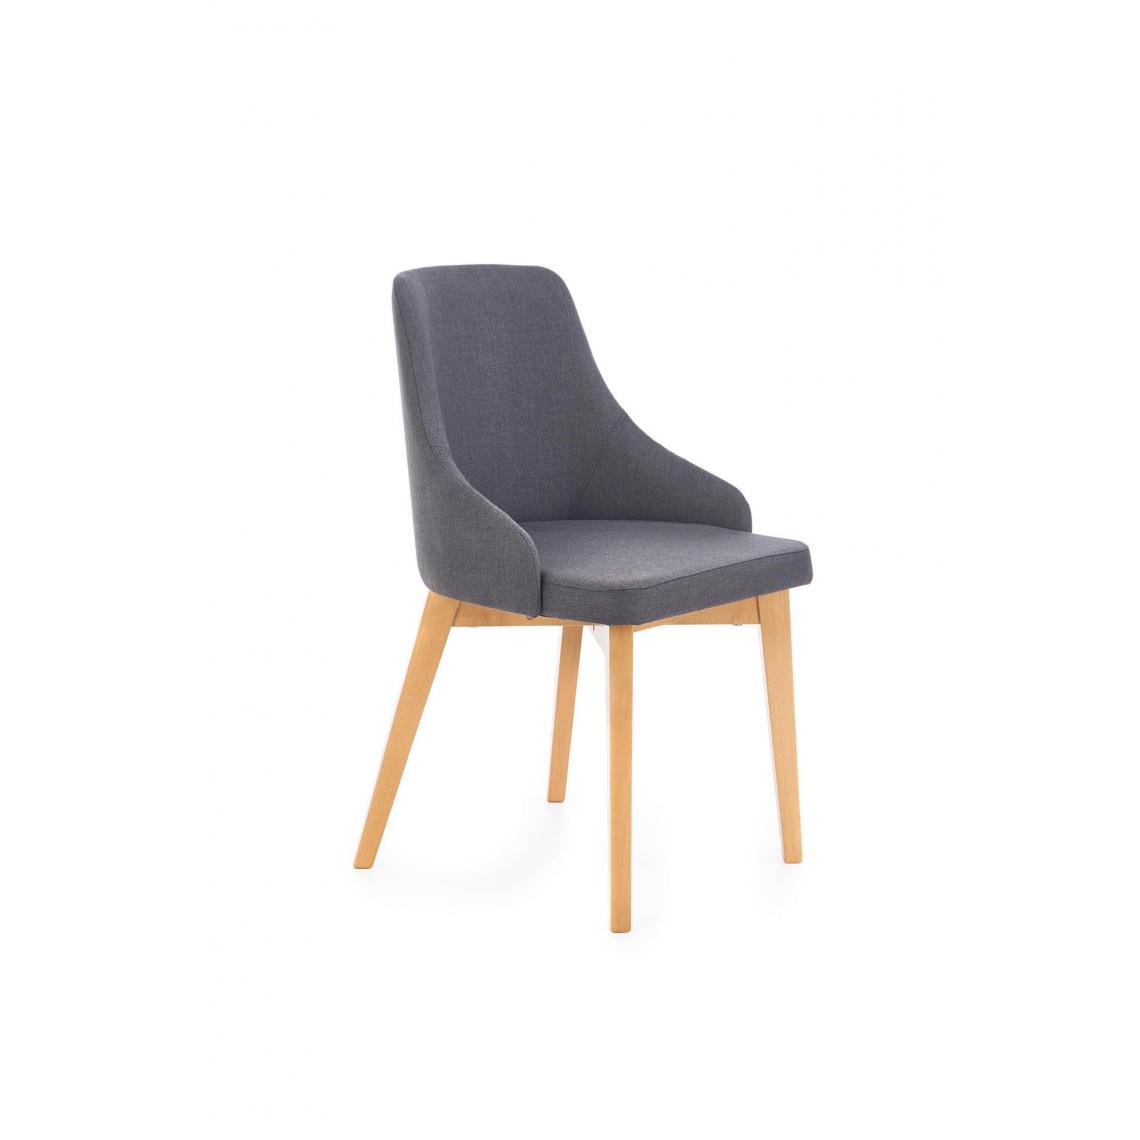 Hucoco - LINETTE - Chaise rembourrée style moderne salon/cuisine - 82x55x51 - Pieds en bois - Meuble de salle à manger - Gris - Chaises